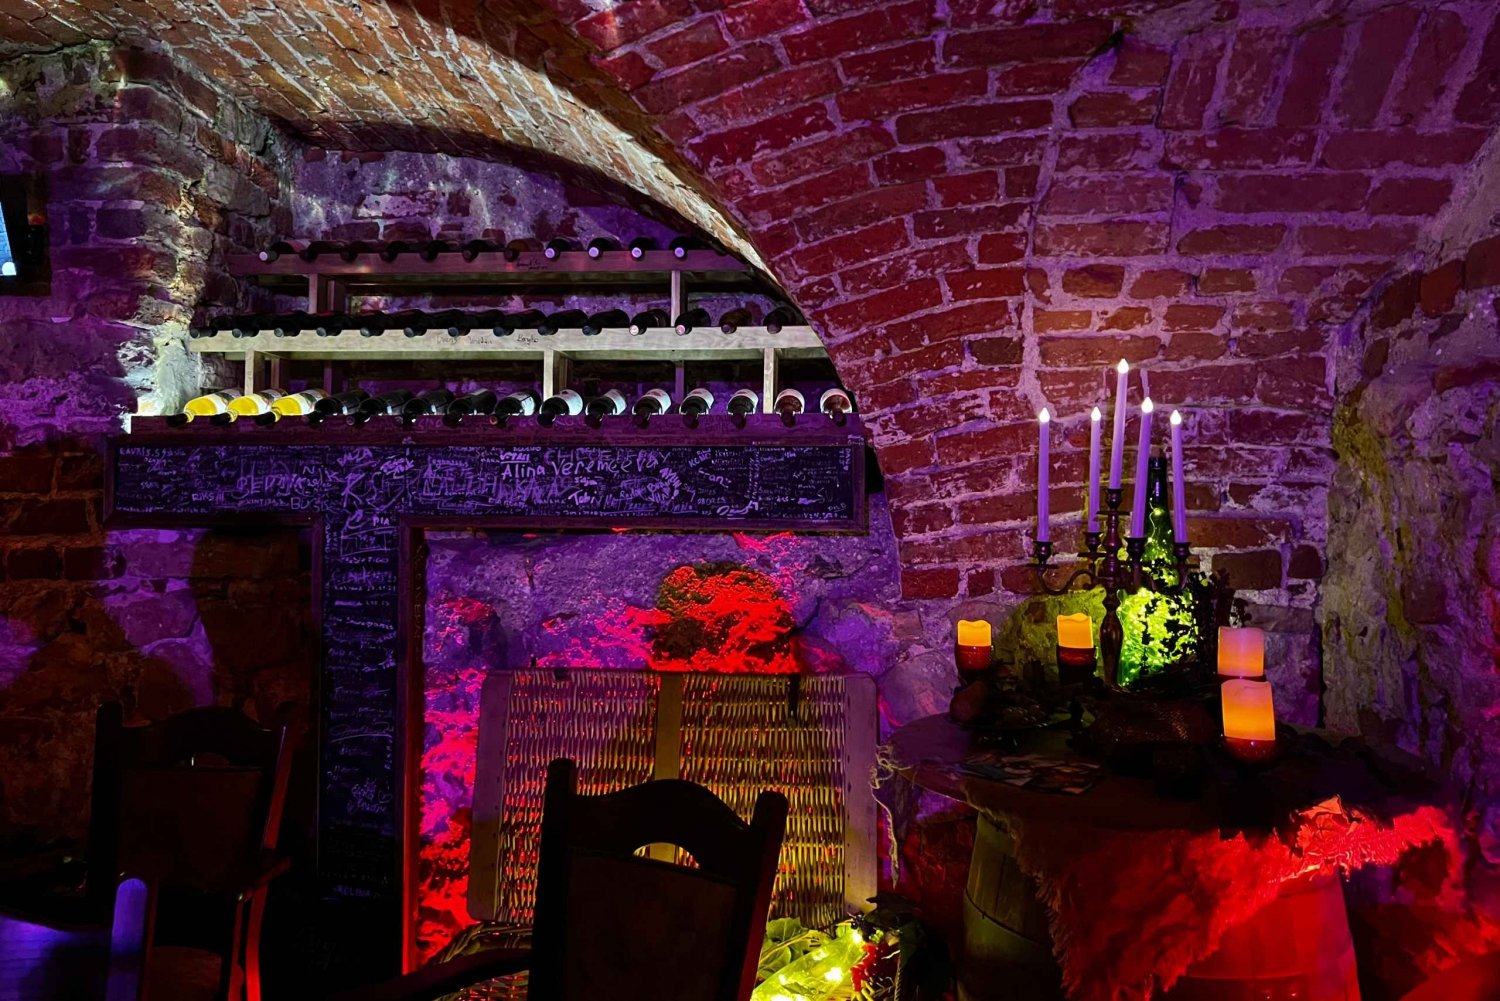 Visita della città vecchia e degustazione di vini lettoni con spettacolo